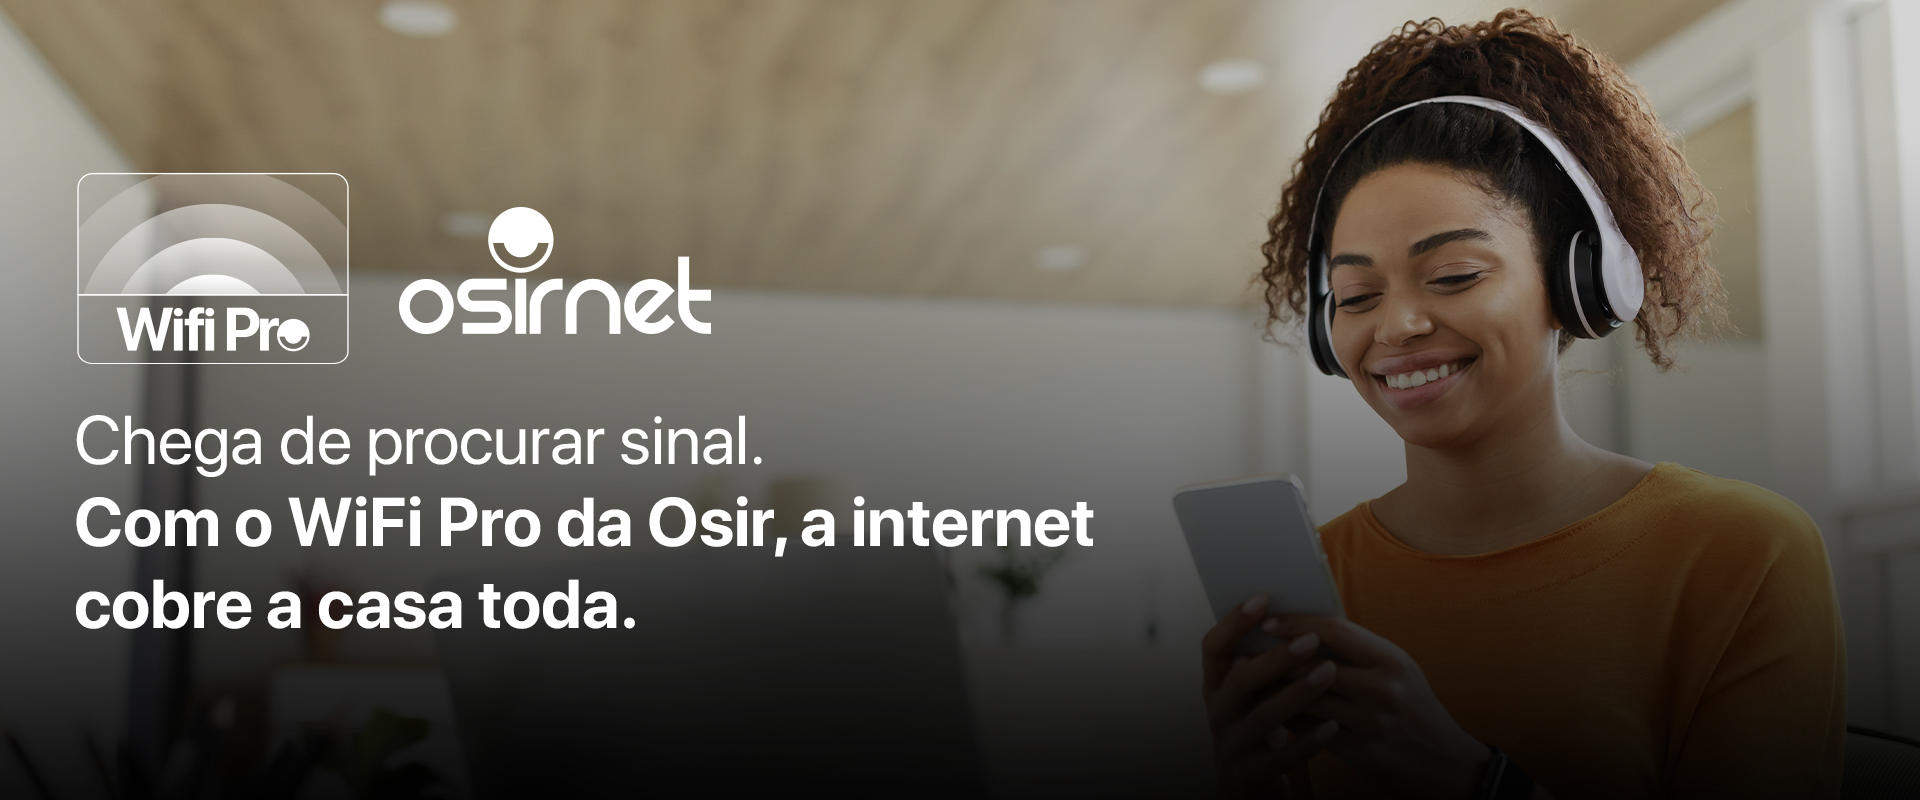 Wi-Fi Pro da Osirnet!